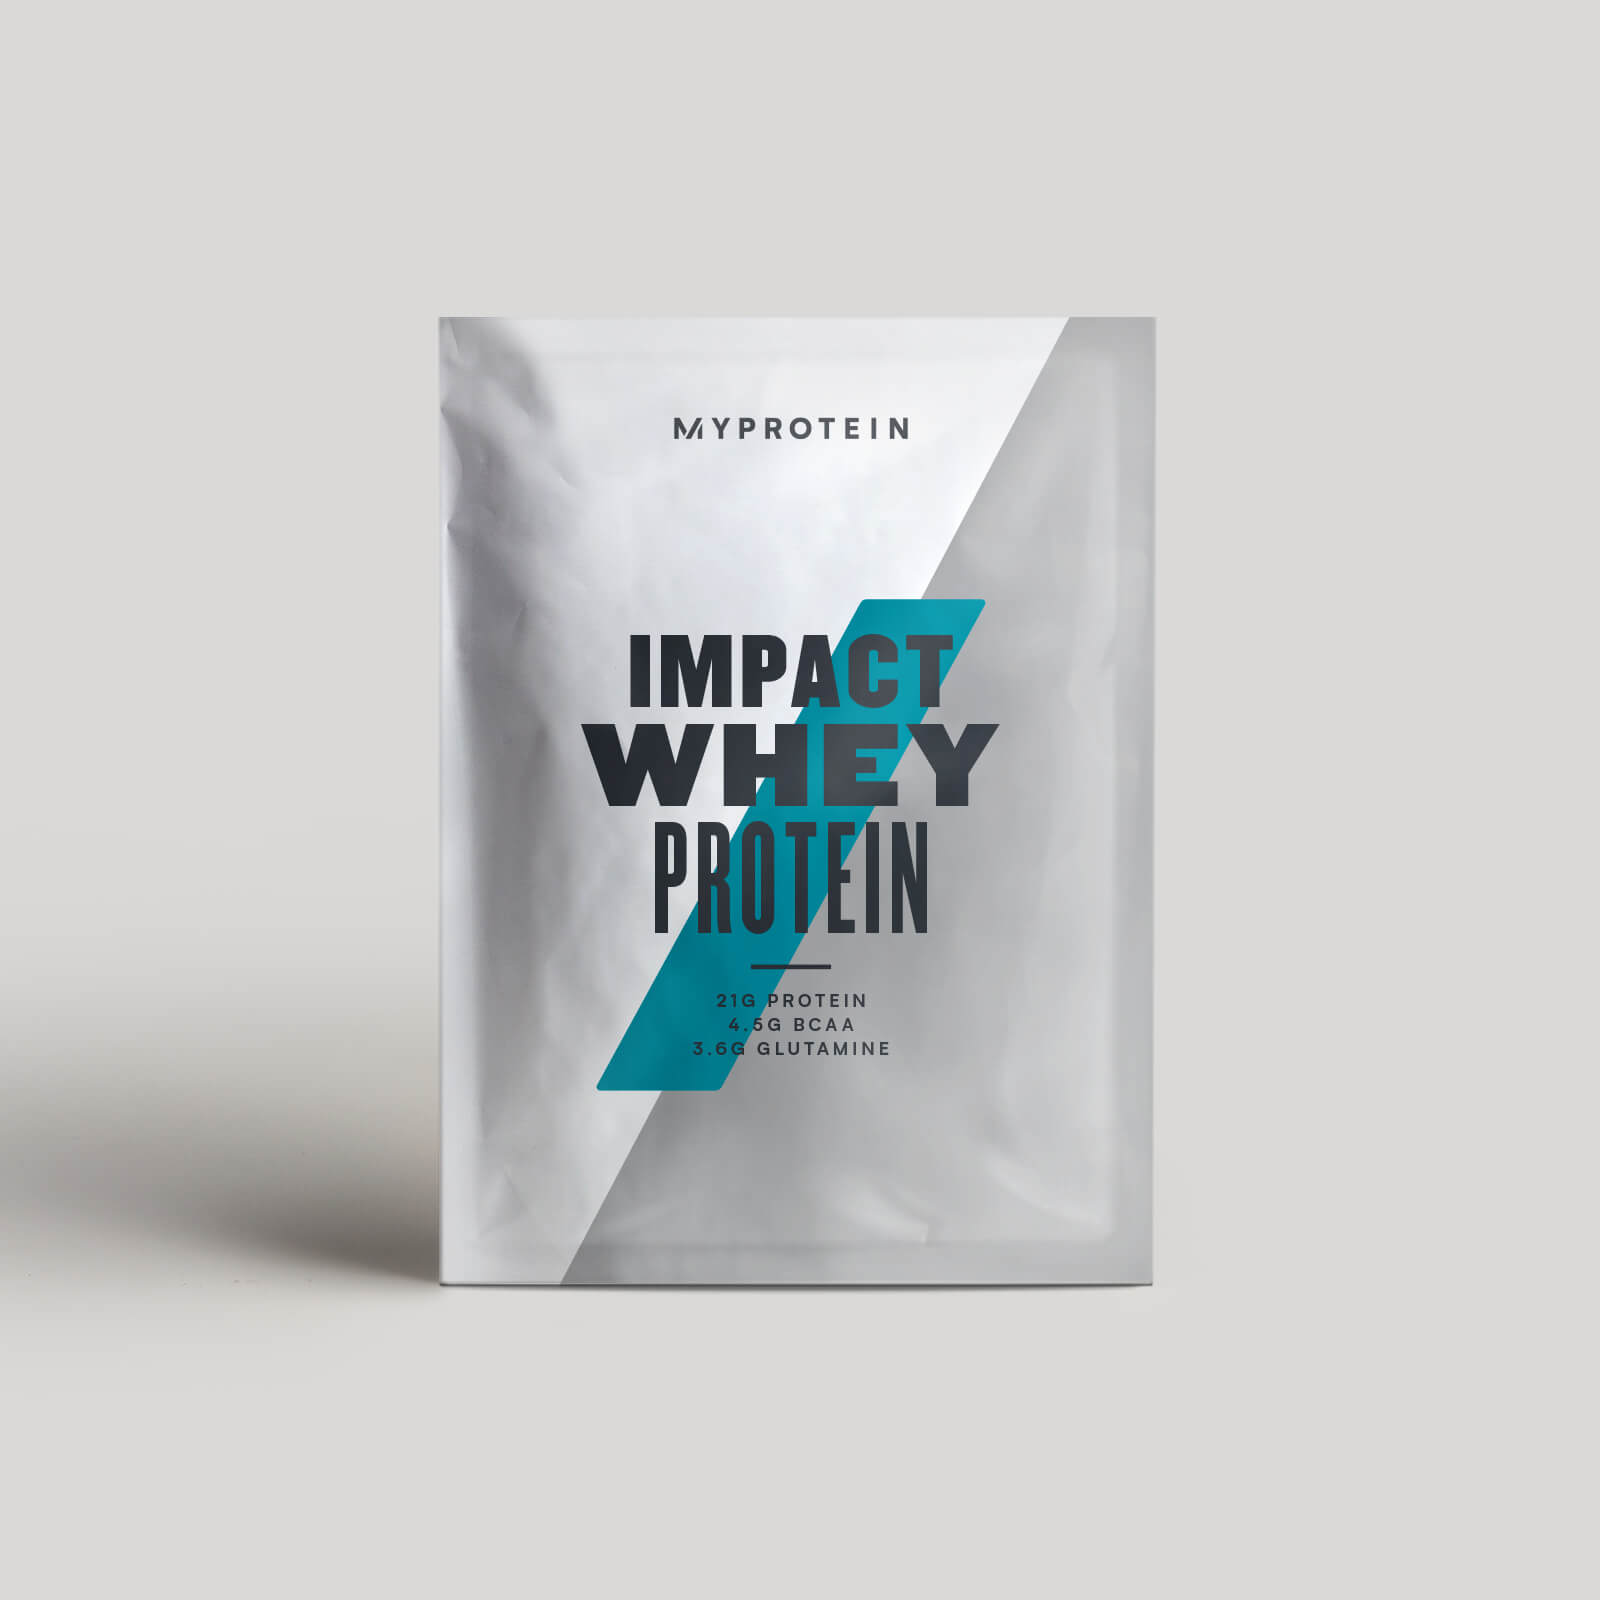 Impact Whey Protein (Amostra) - 25g - Chá e leite